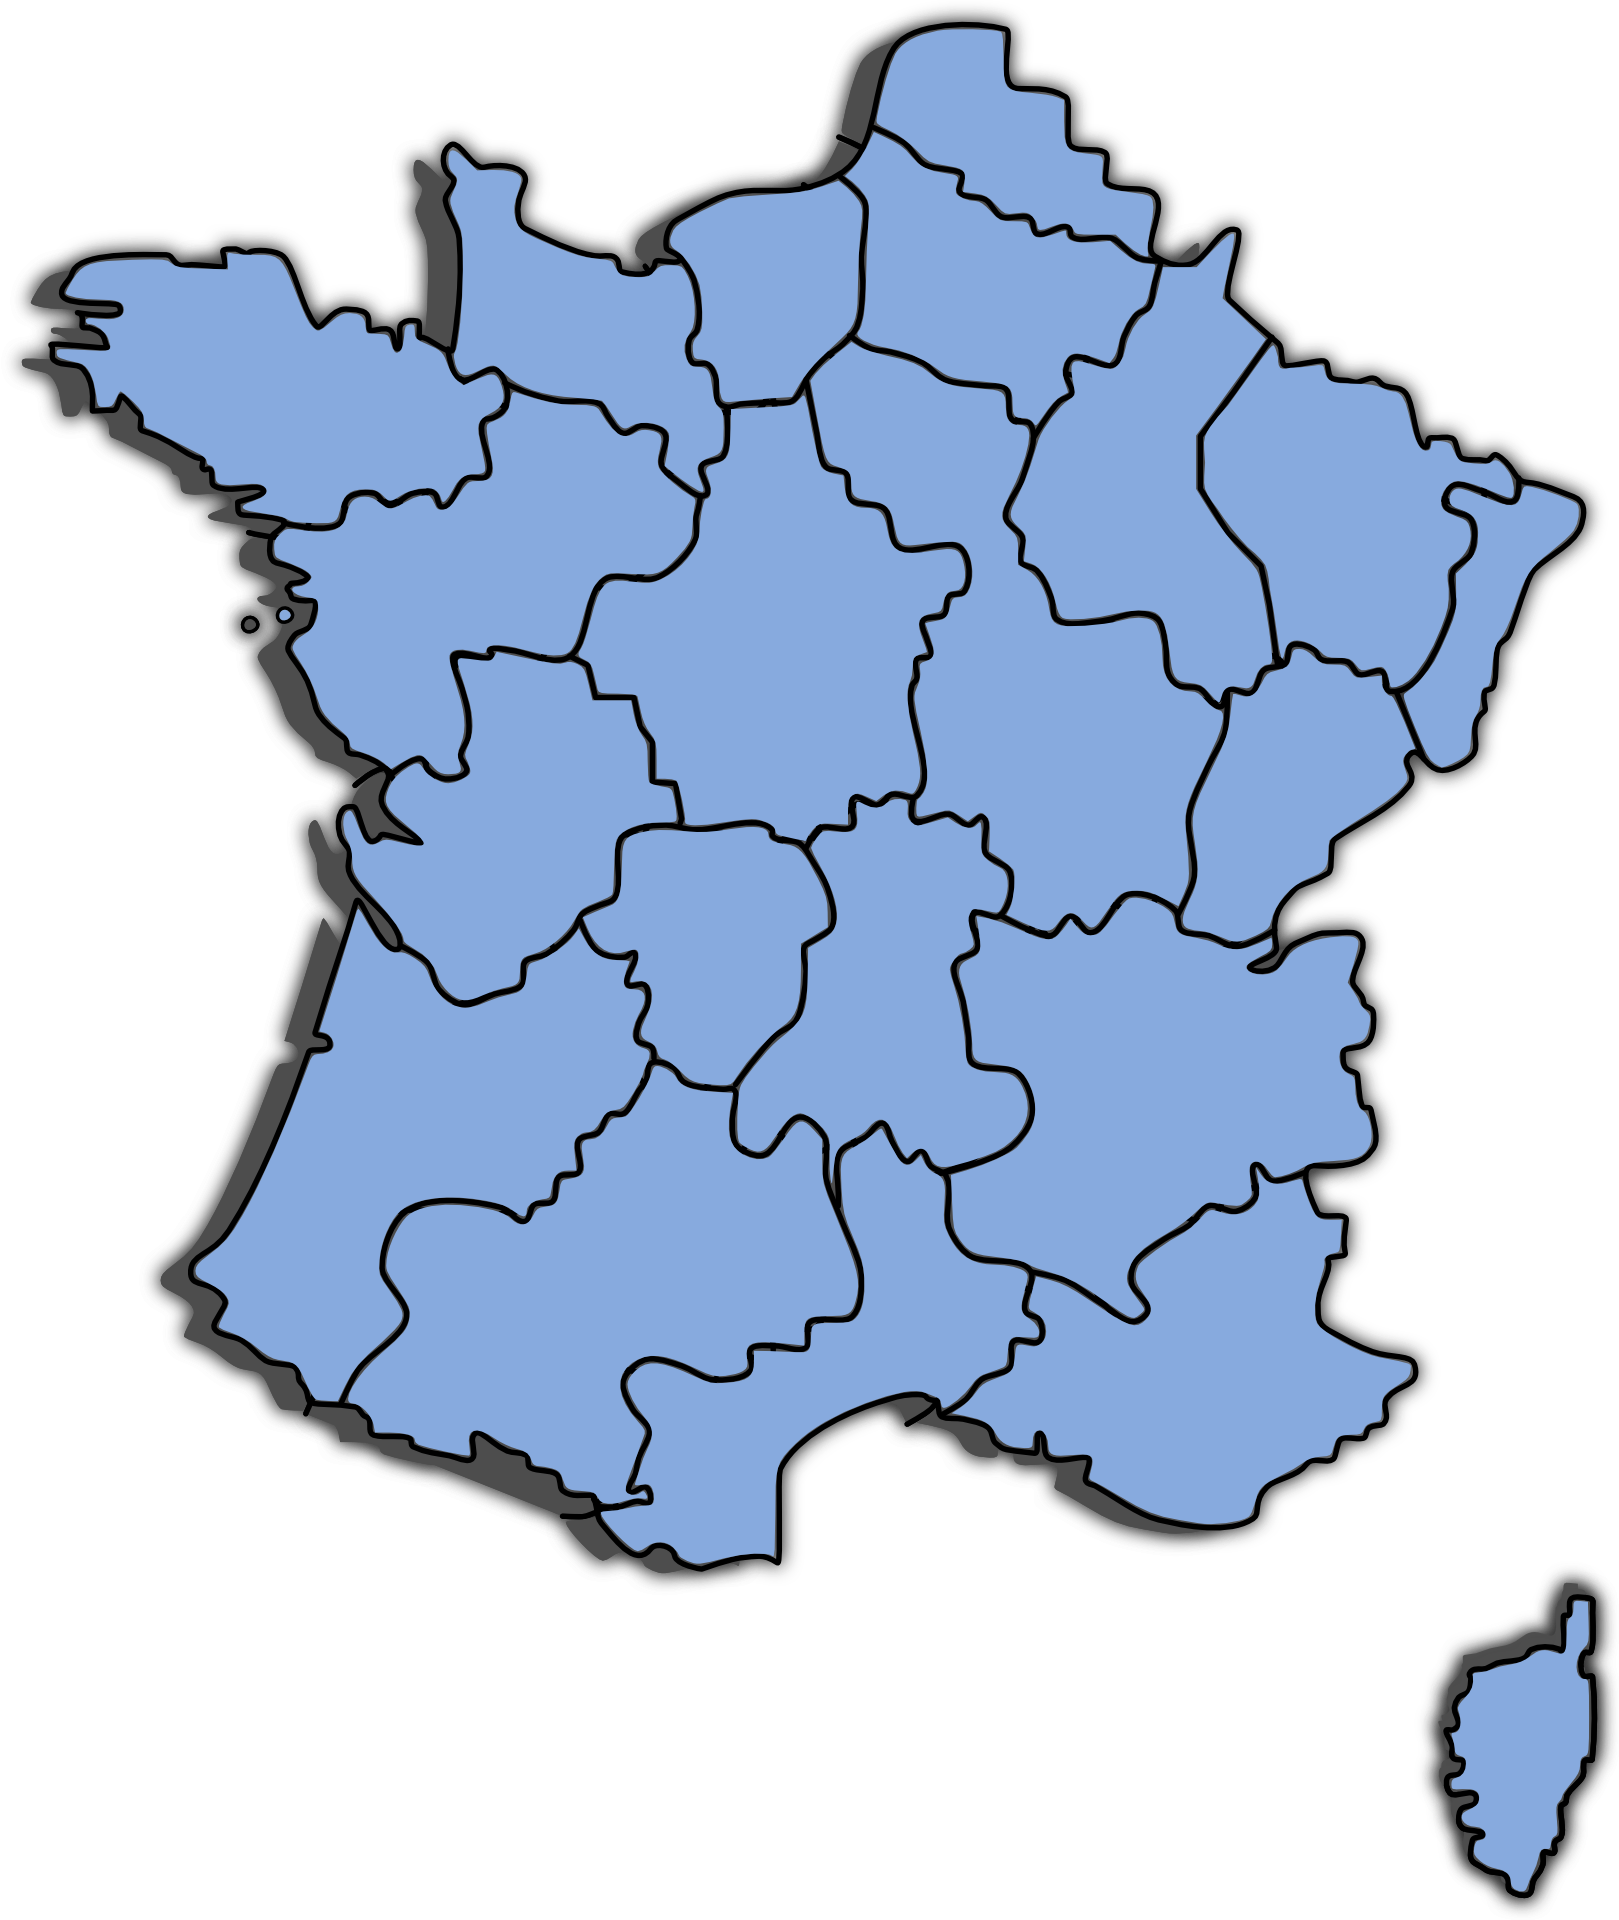 Mappa della francia